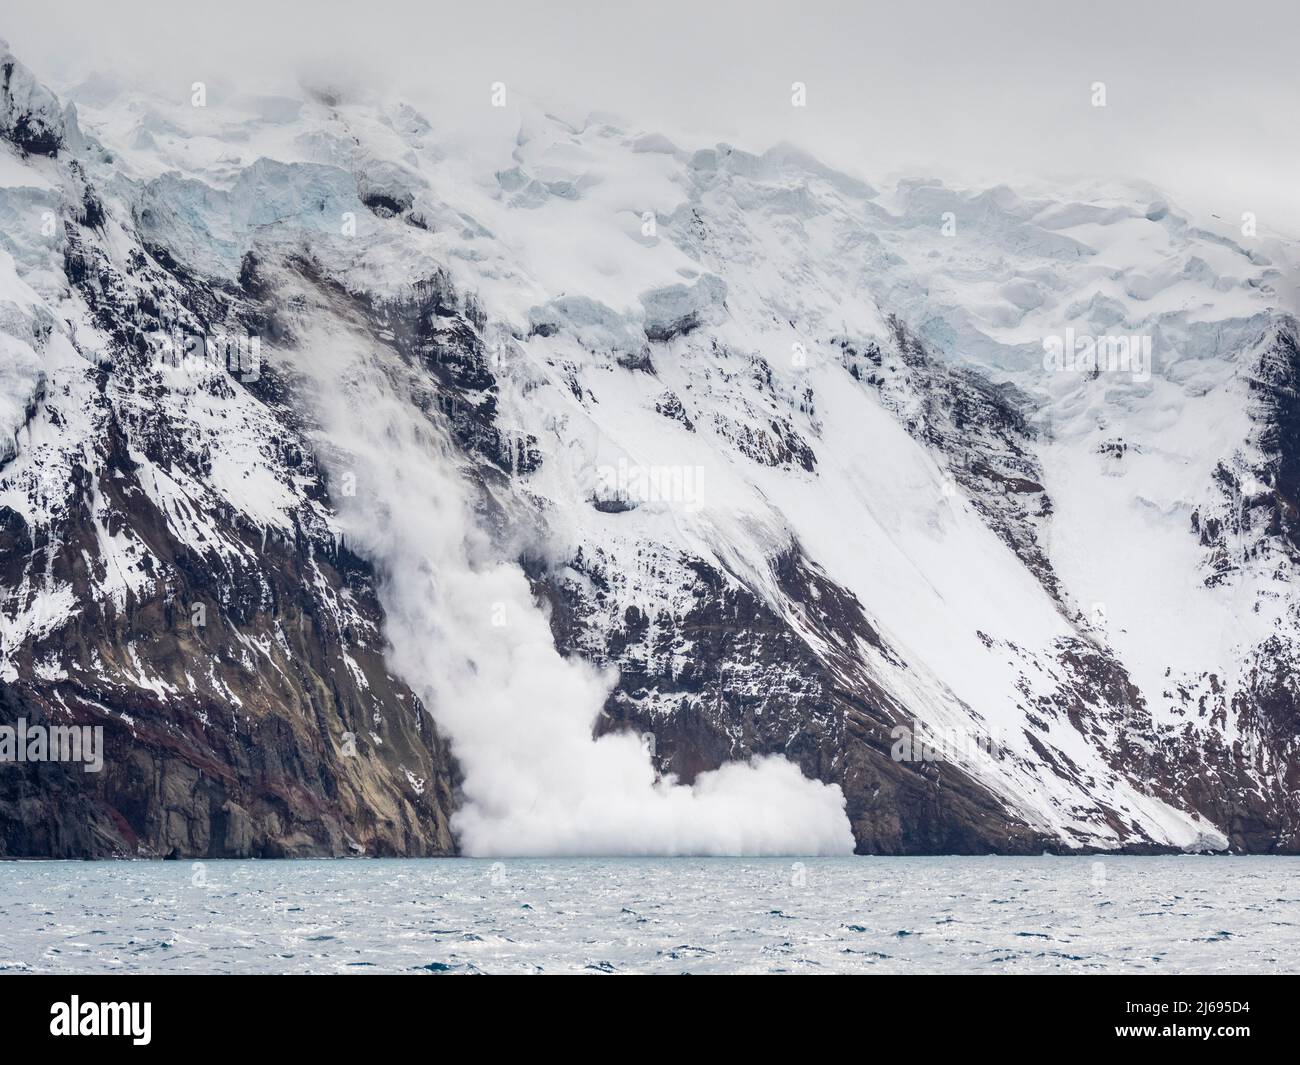 Una valanga di ghiaccio cadente sull'isola di Thule, un'isola vulcanica nelle isole di Sandwich del Sud, nell'Atlantico del Sud, nelle regioni polari Foto Stock